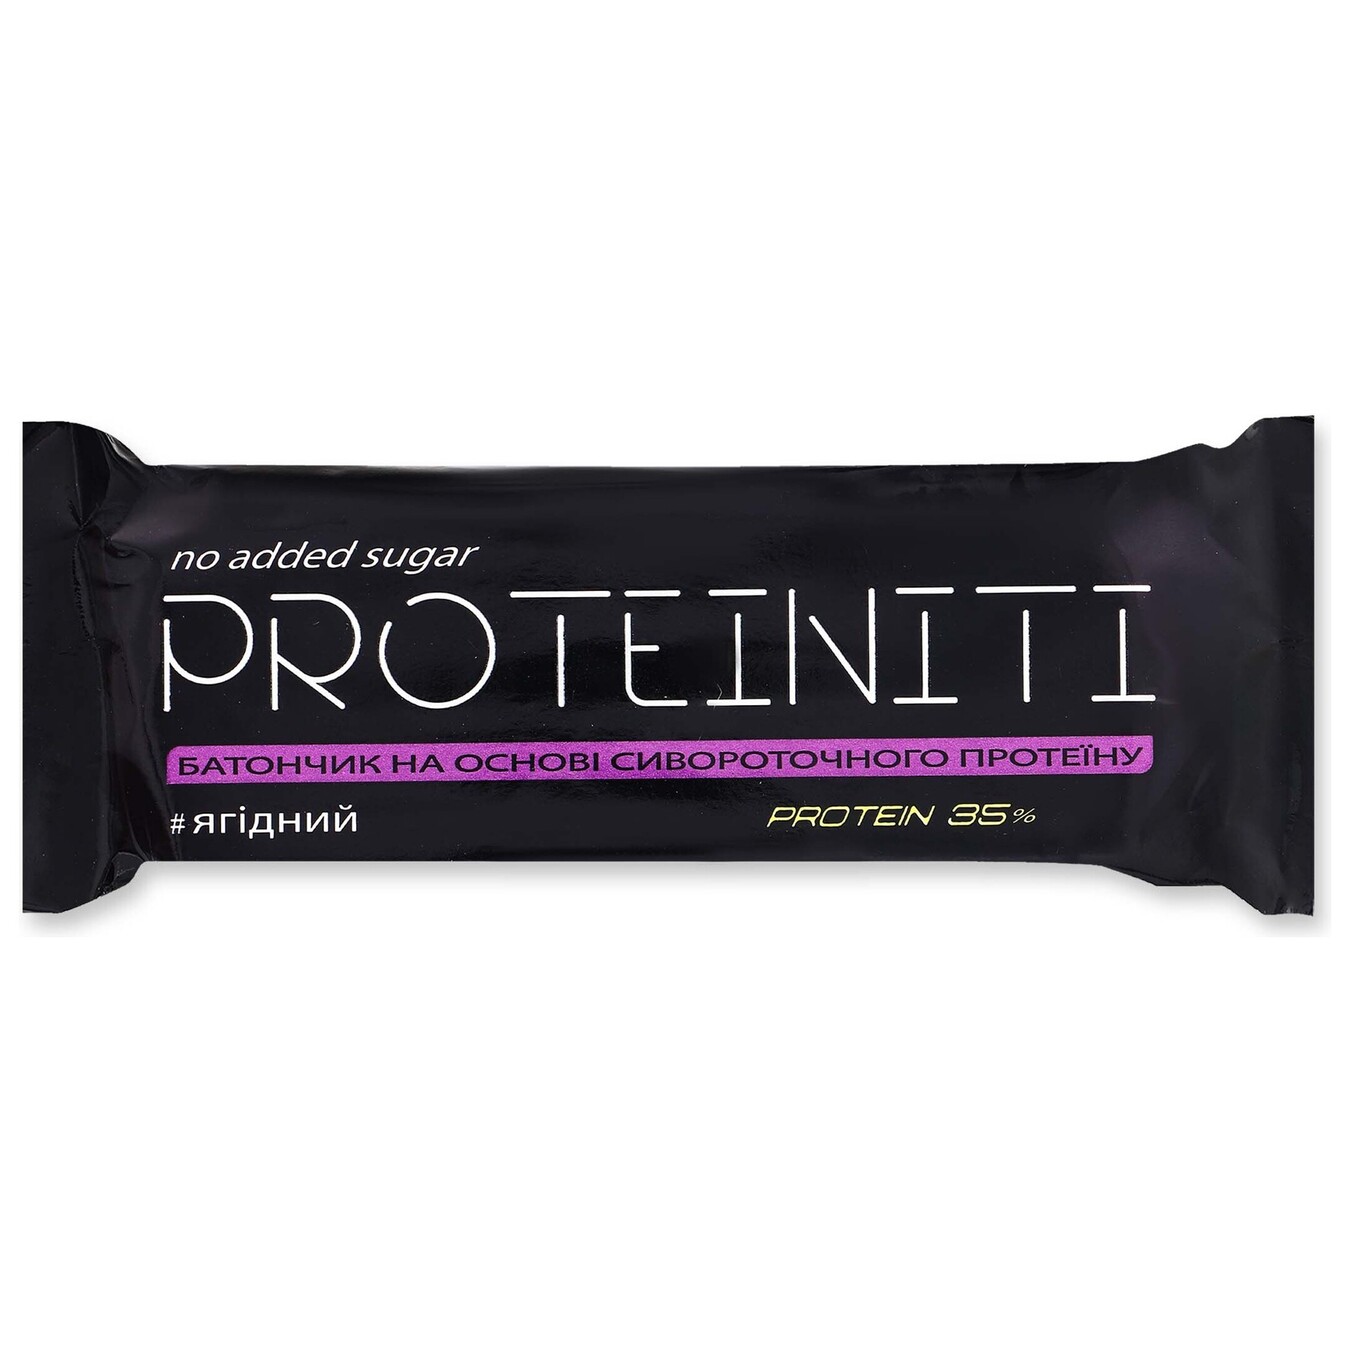 Батончик Proteiniti протеиновый ягодный 40г